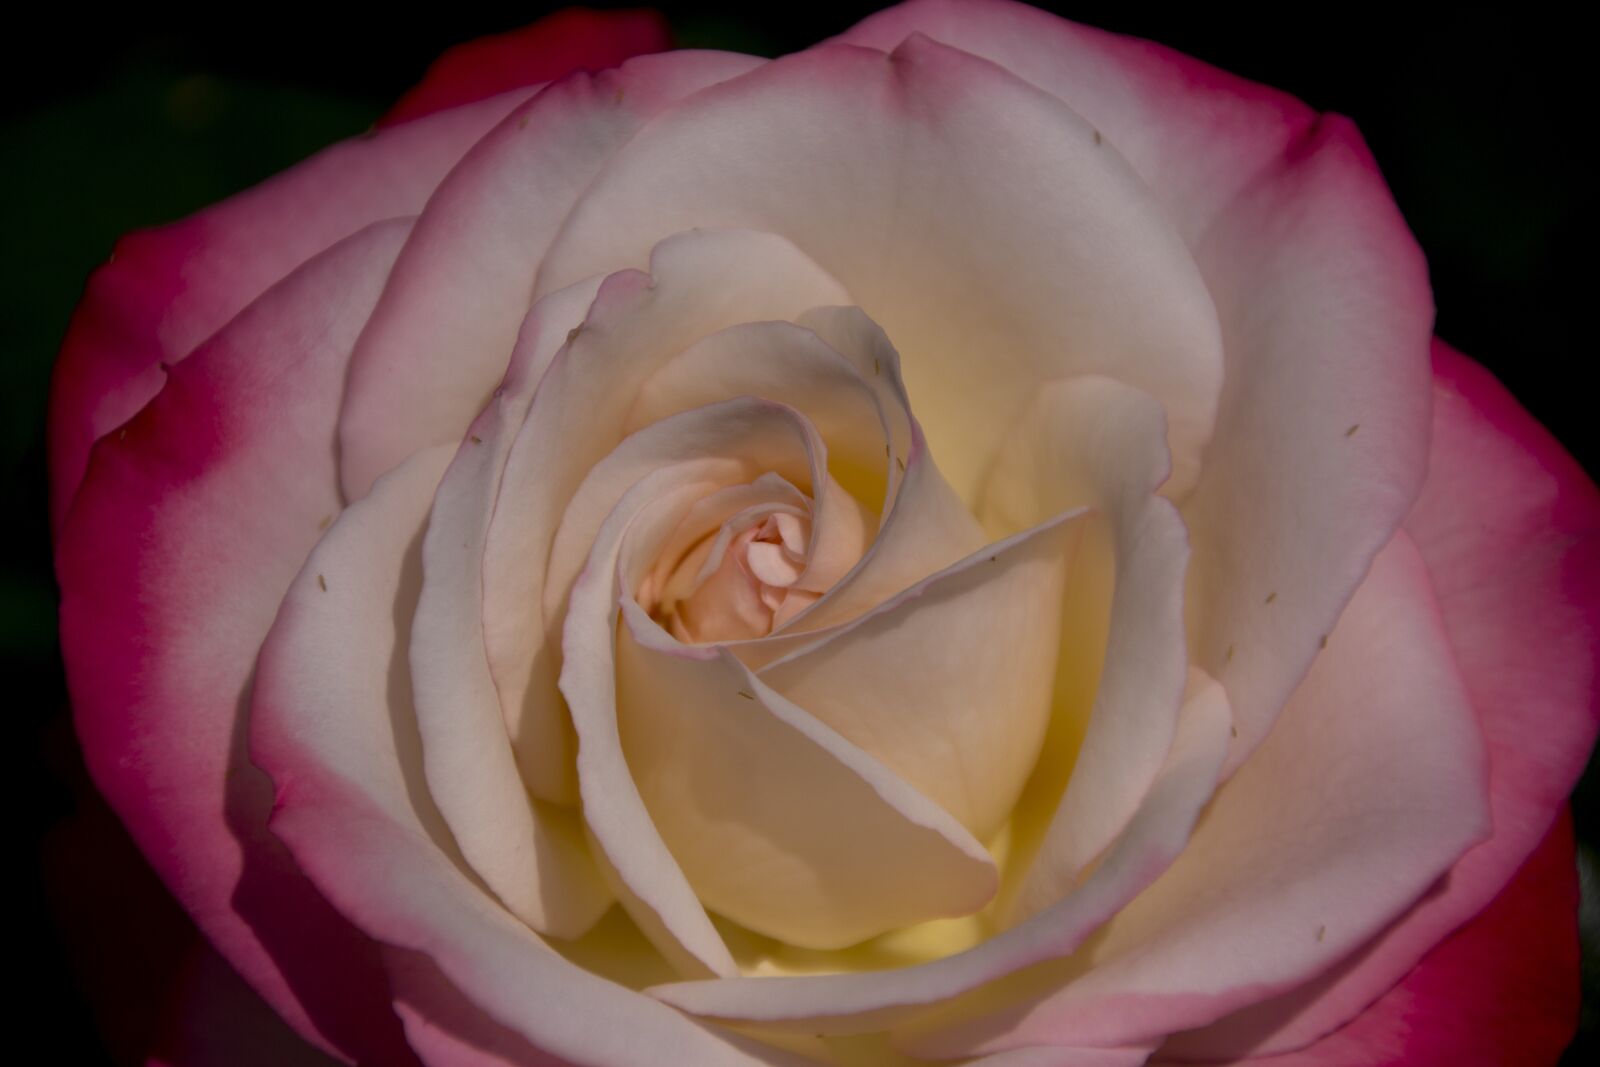 Canon EOS 60D sample photo. Rose, flower, garden photography